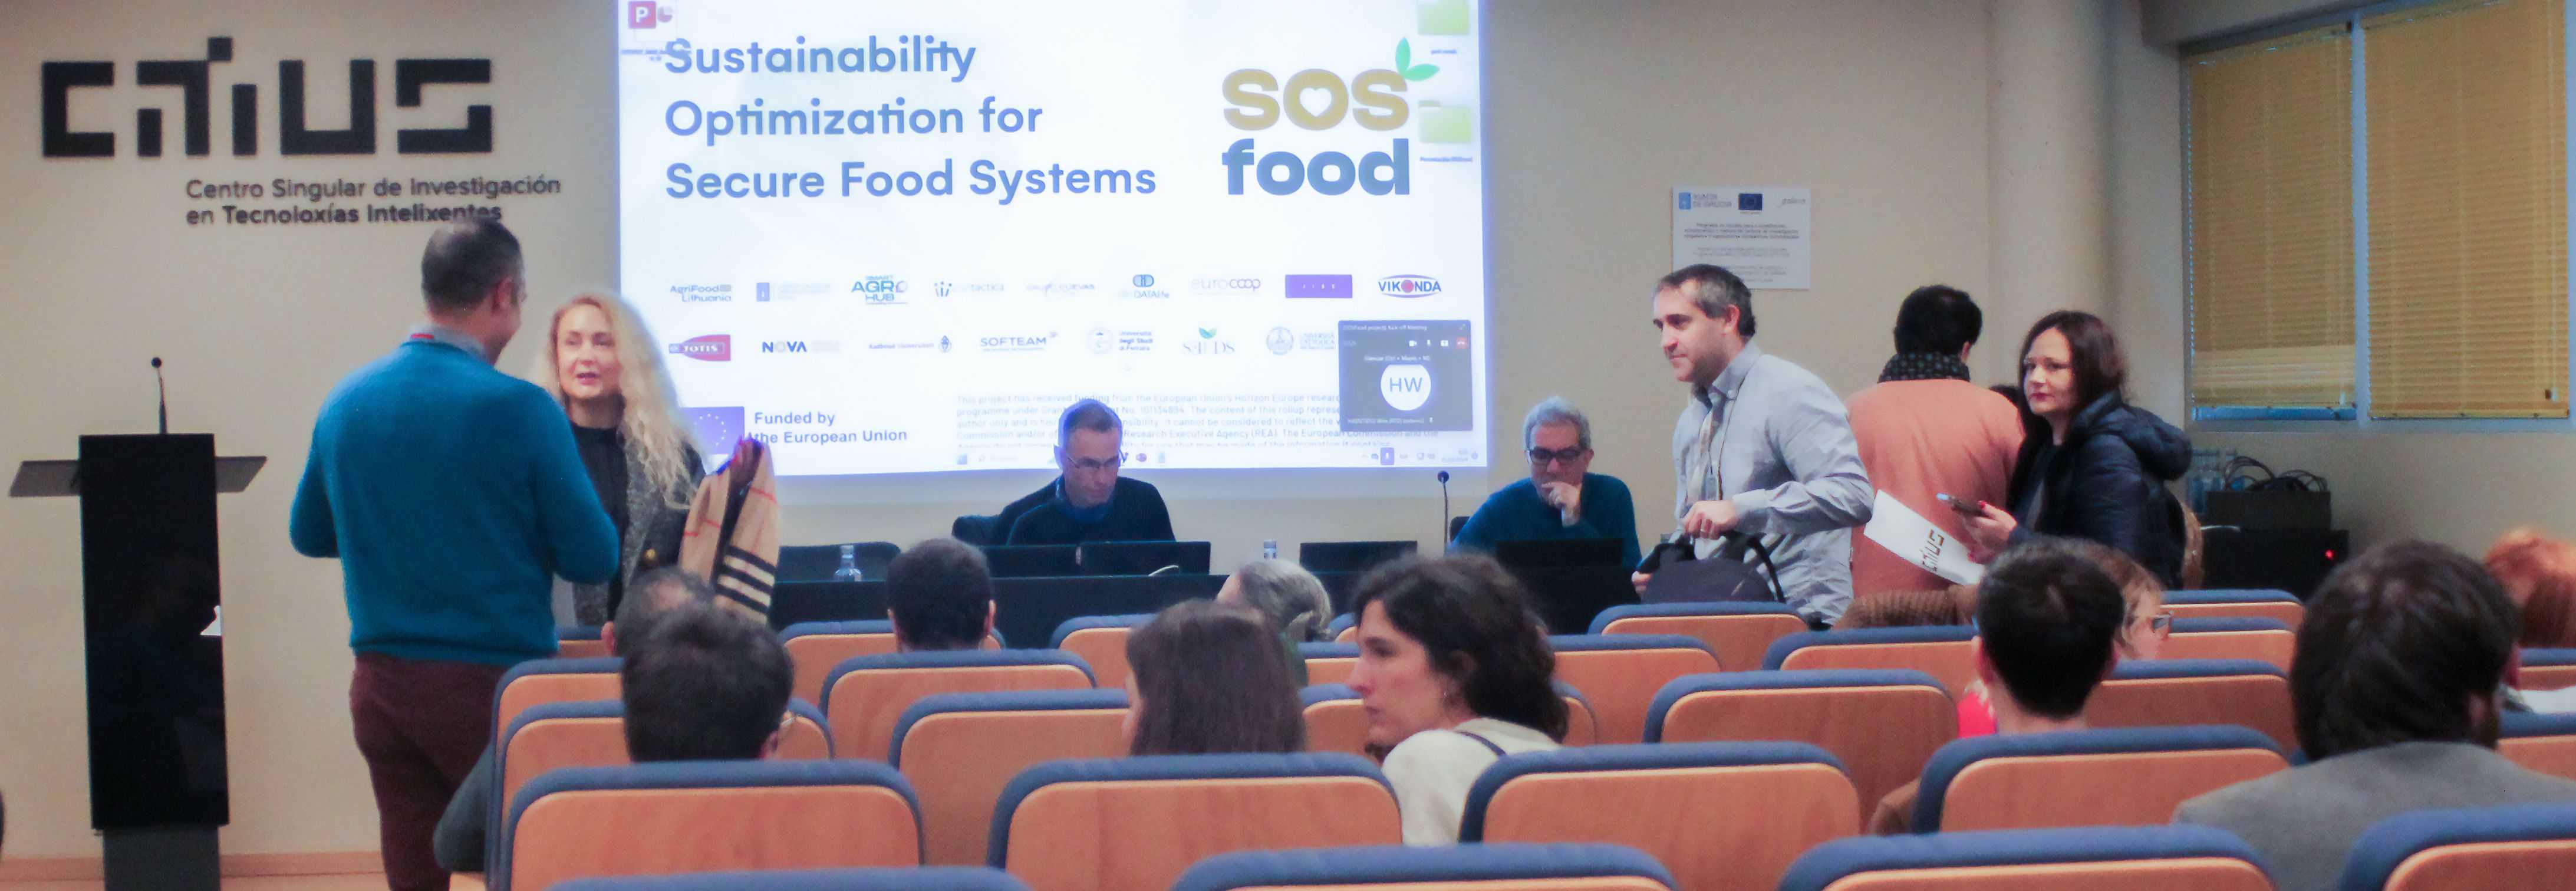 Nace SOSfood, un proyecto para optimizar la sostenibilidad del sistema alimentario basado en la importancia de los datos y el uso de la Inteligencia Artificial